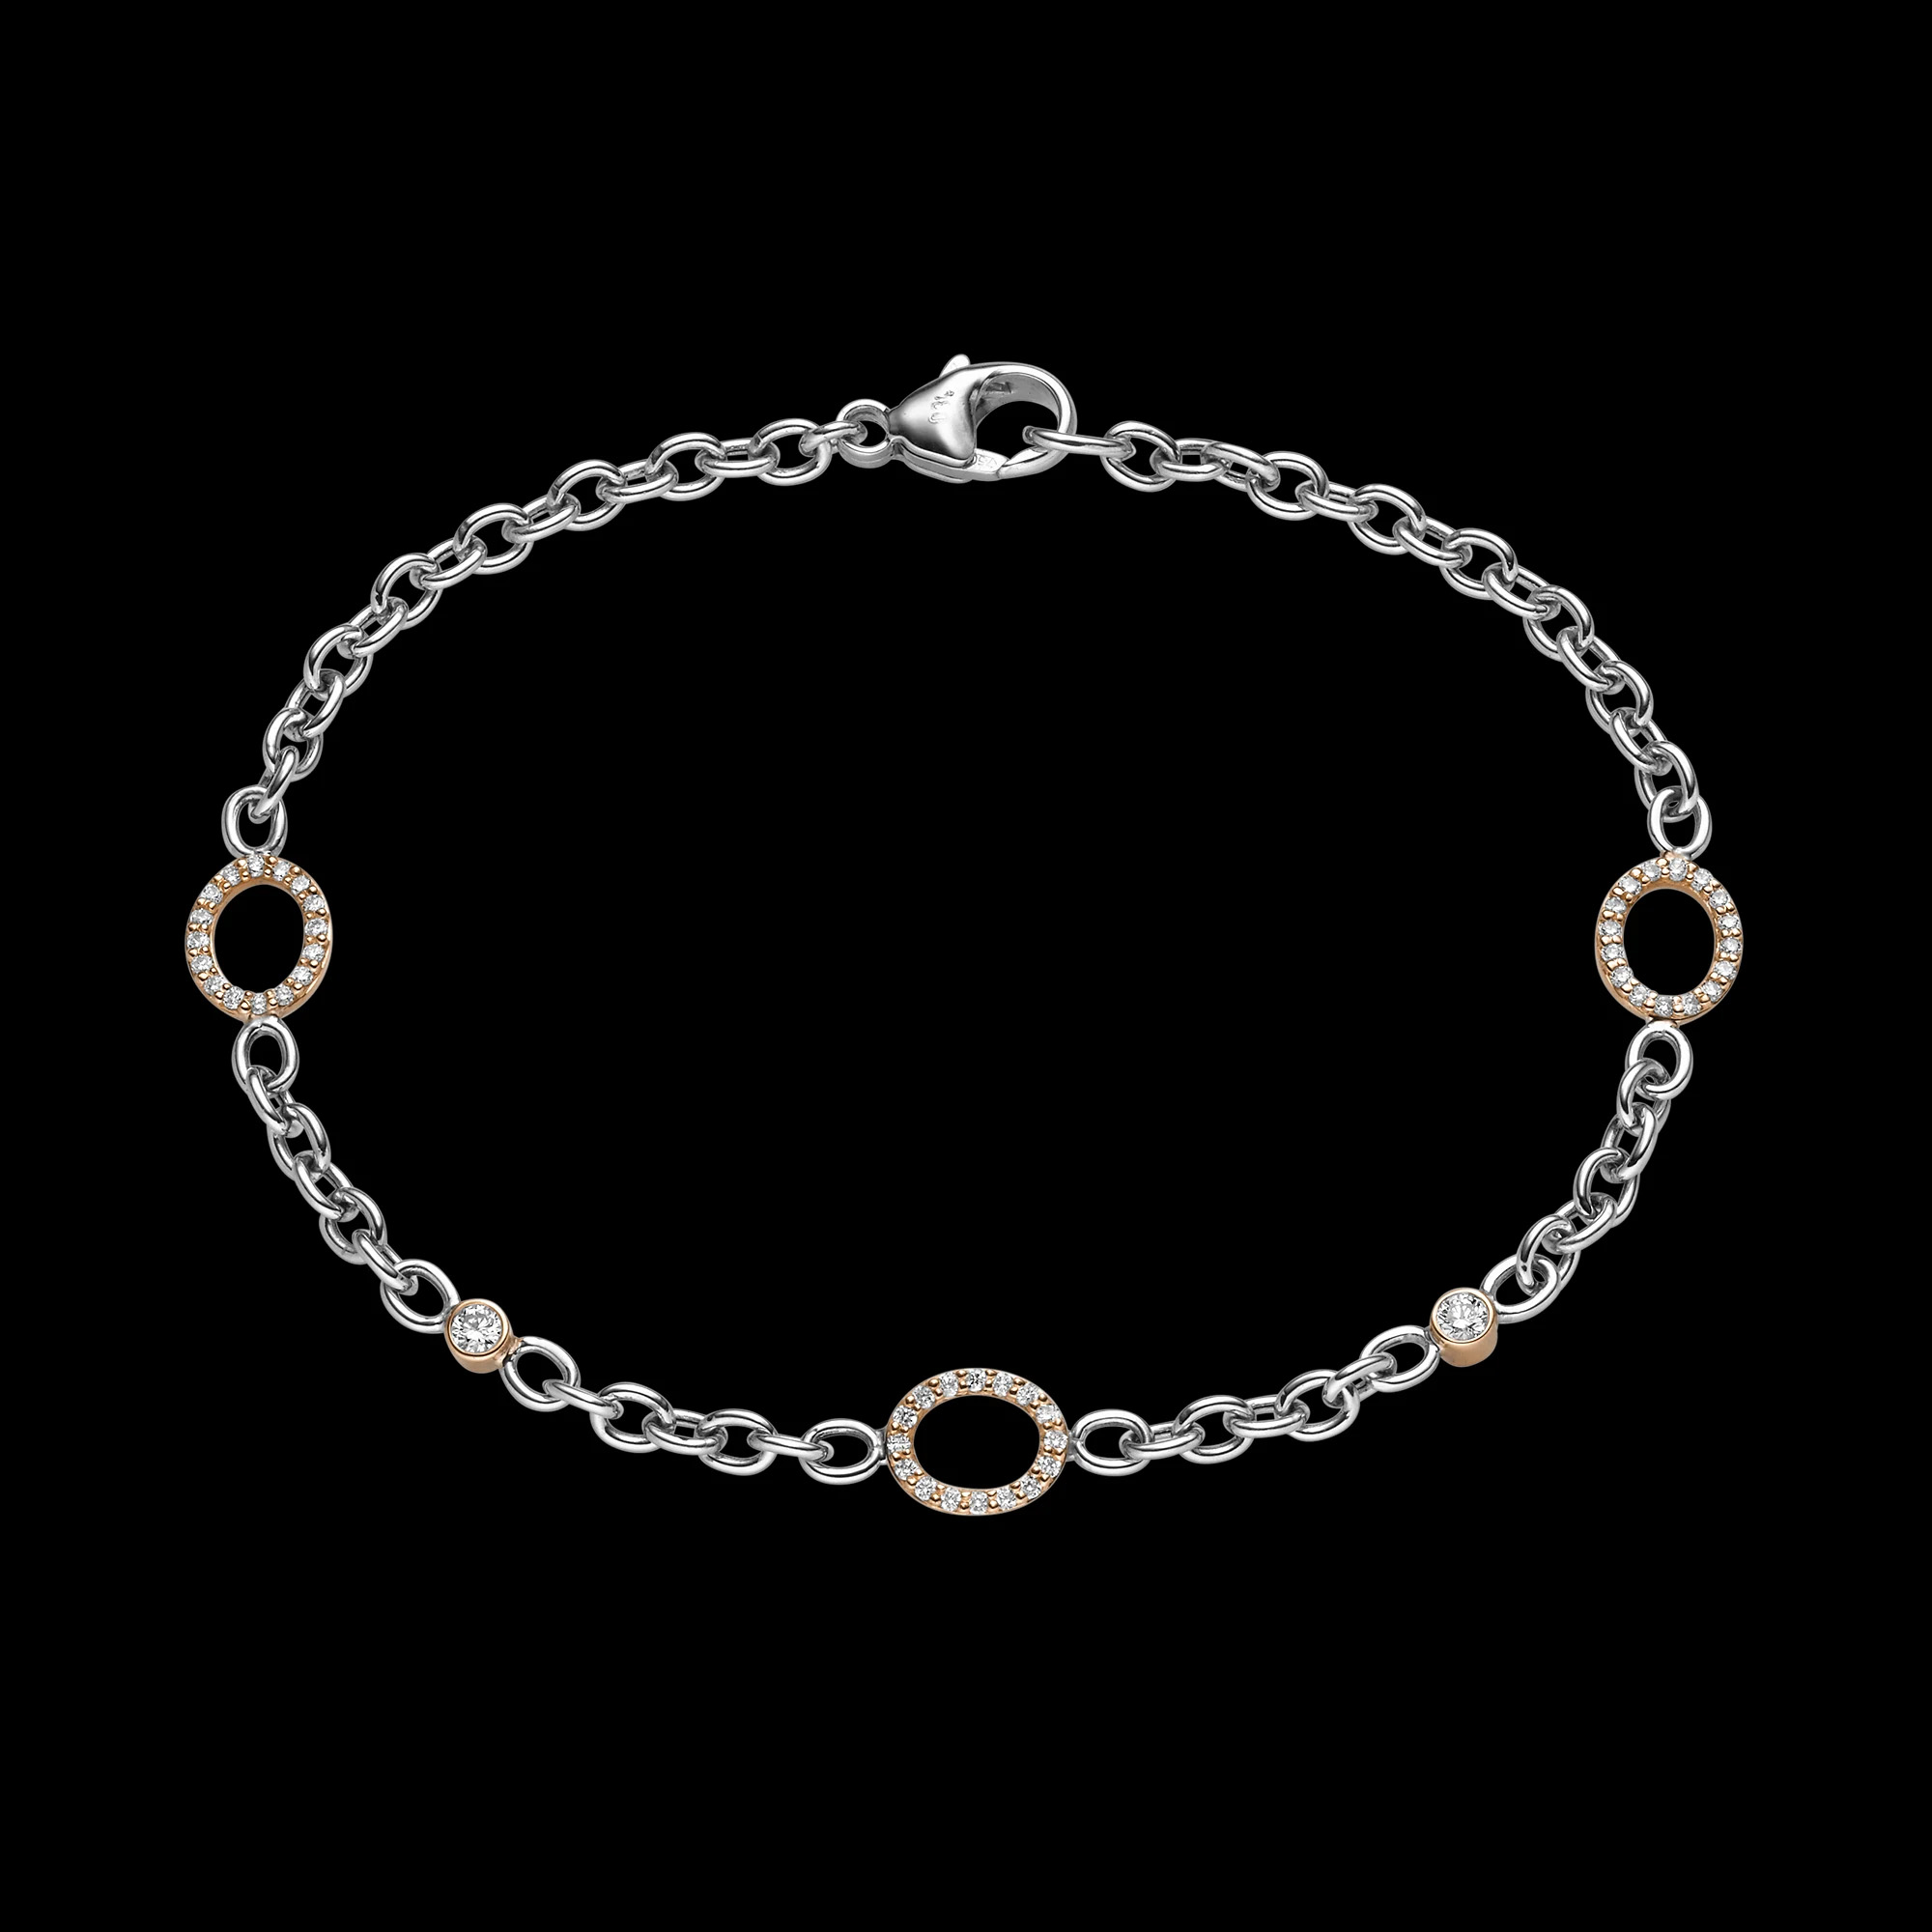 Wholesale customized bracelet zircon OEM/ODM Jewelry jewelry manufacturer